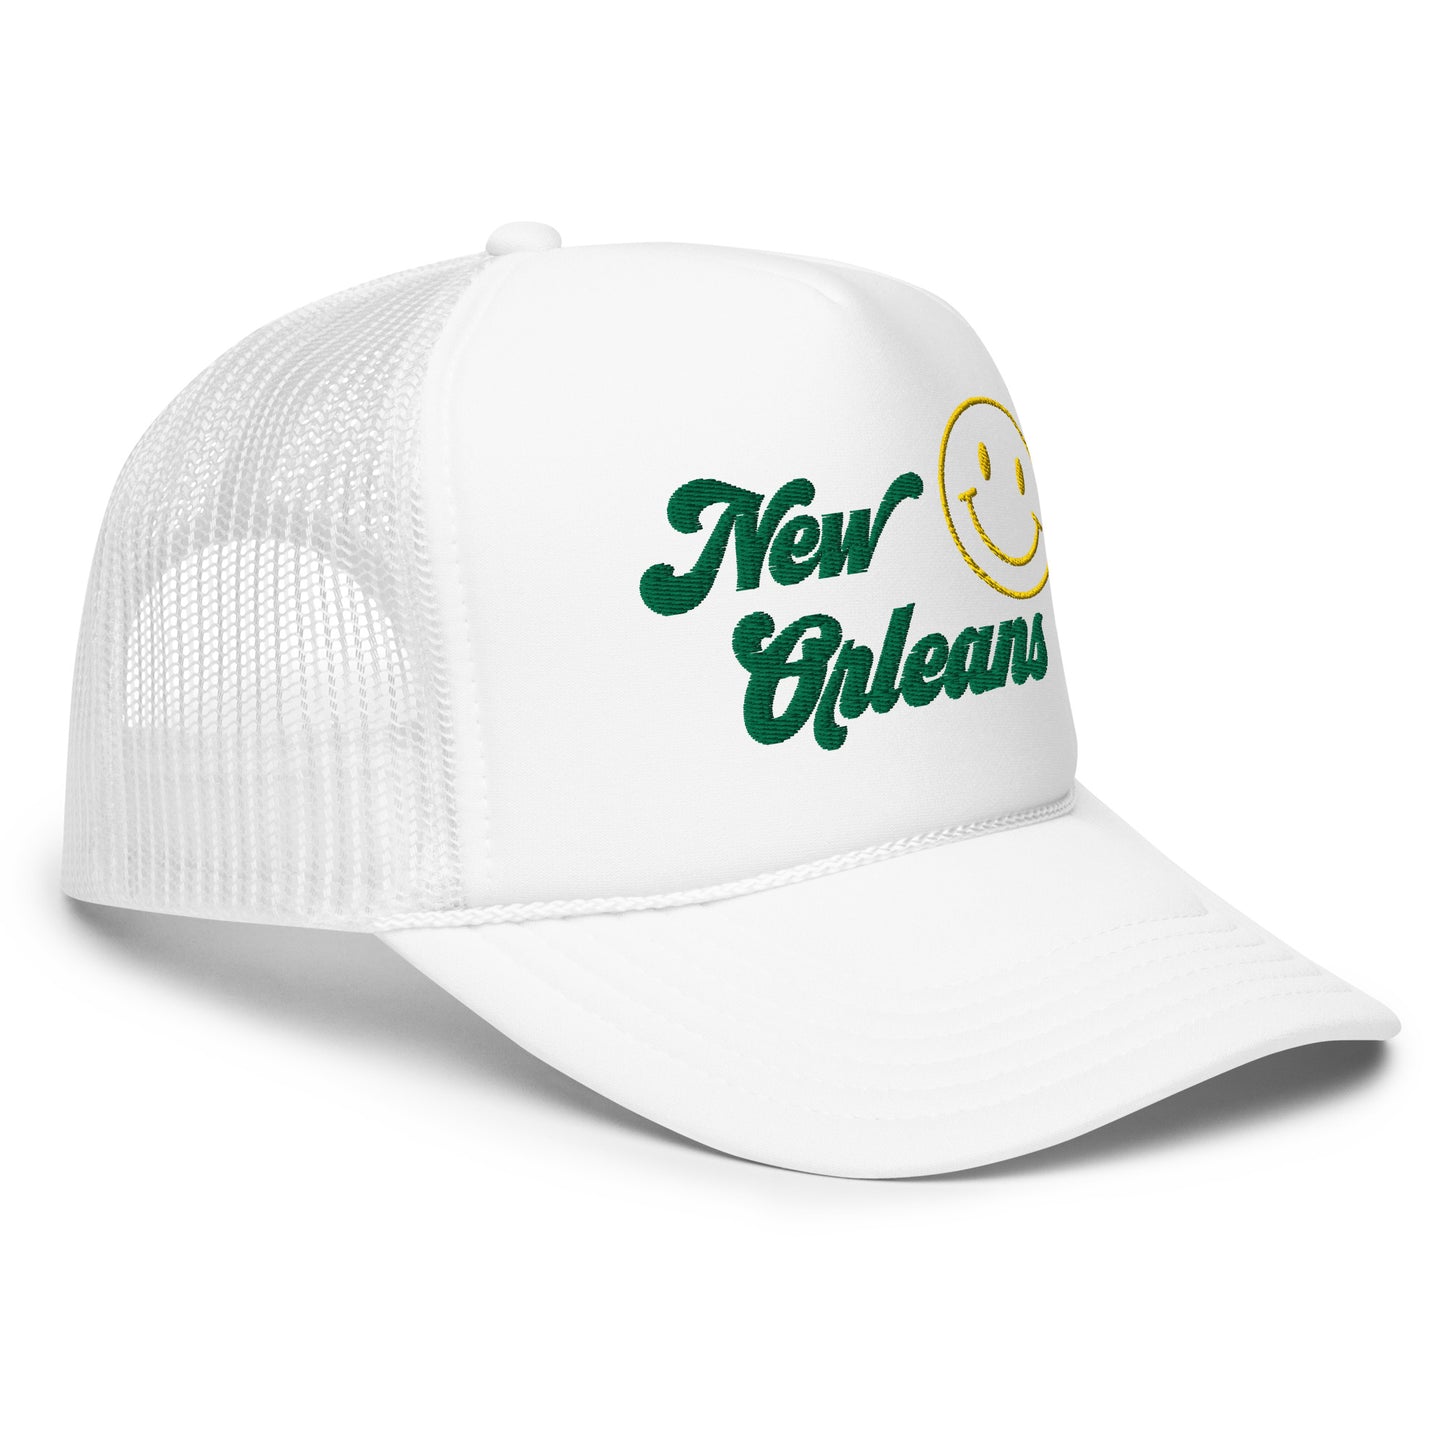 Smile New Orleans Foam Trucker Hat